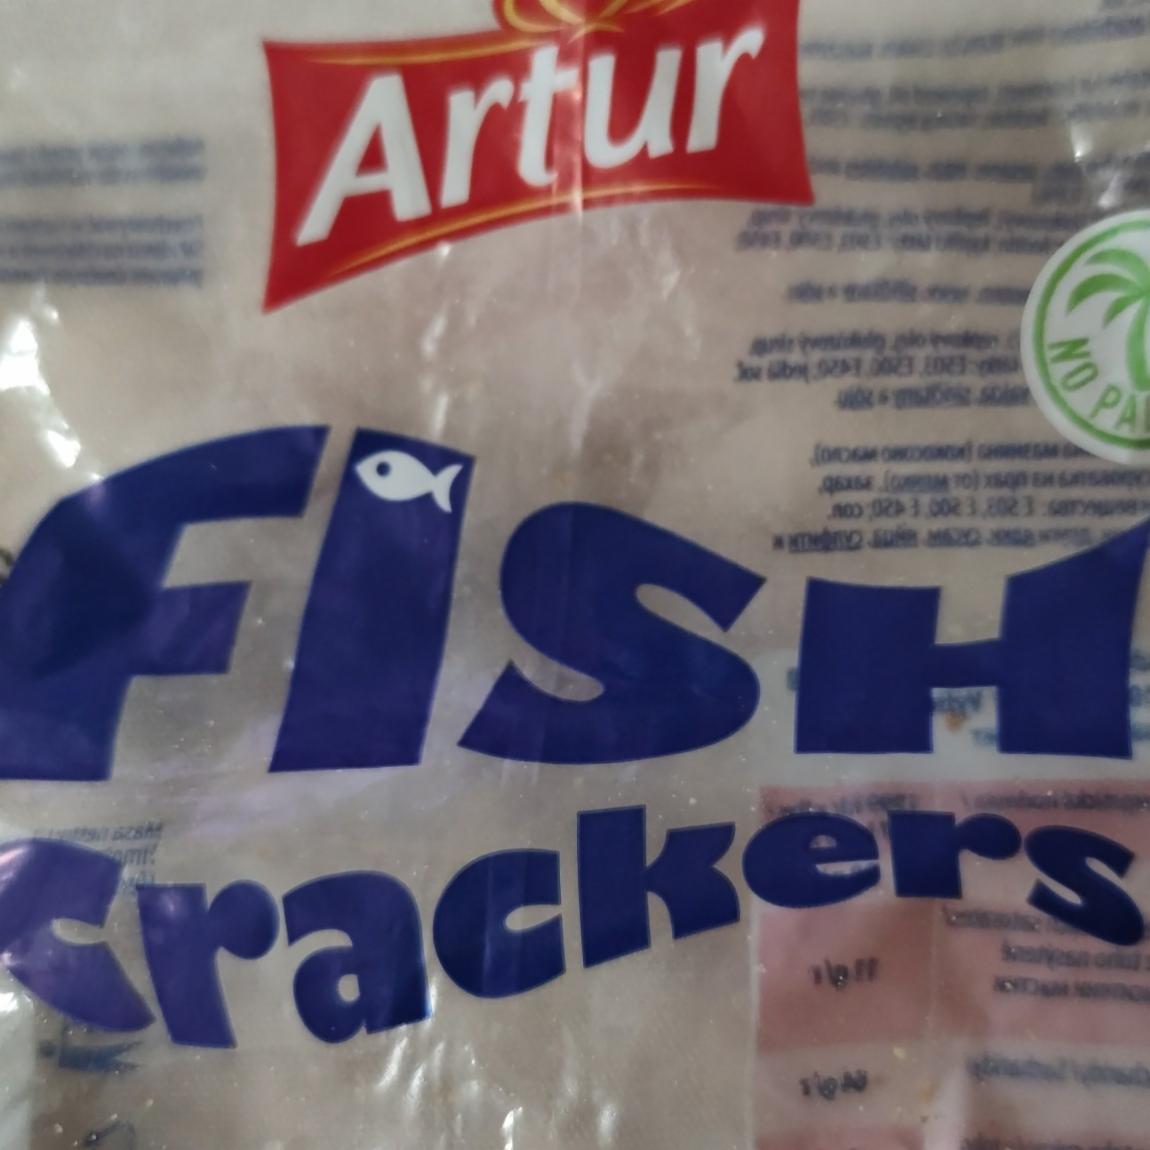 Fotografie - Fish crackers Artur